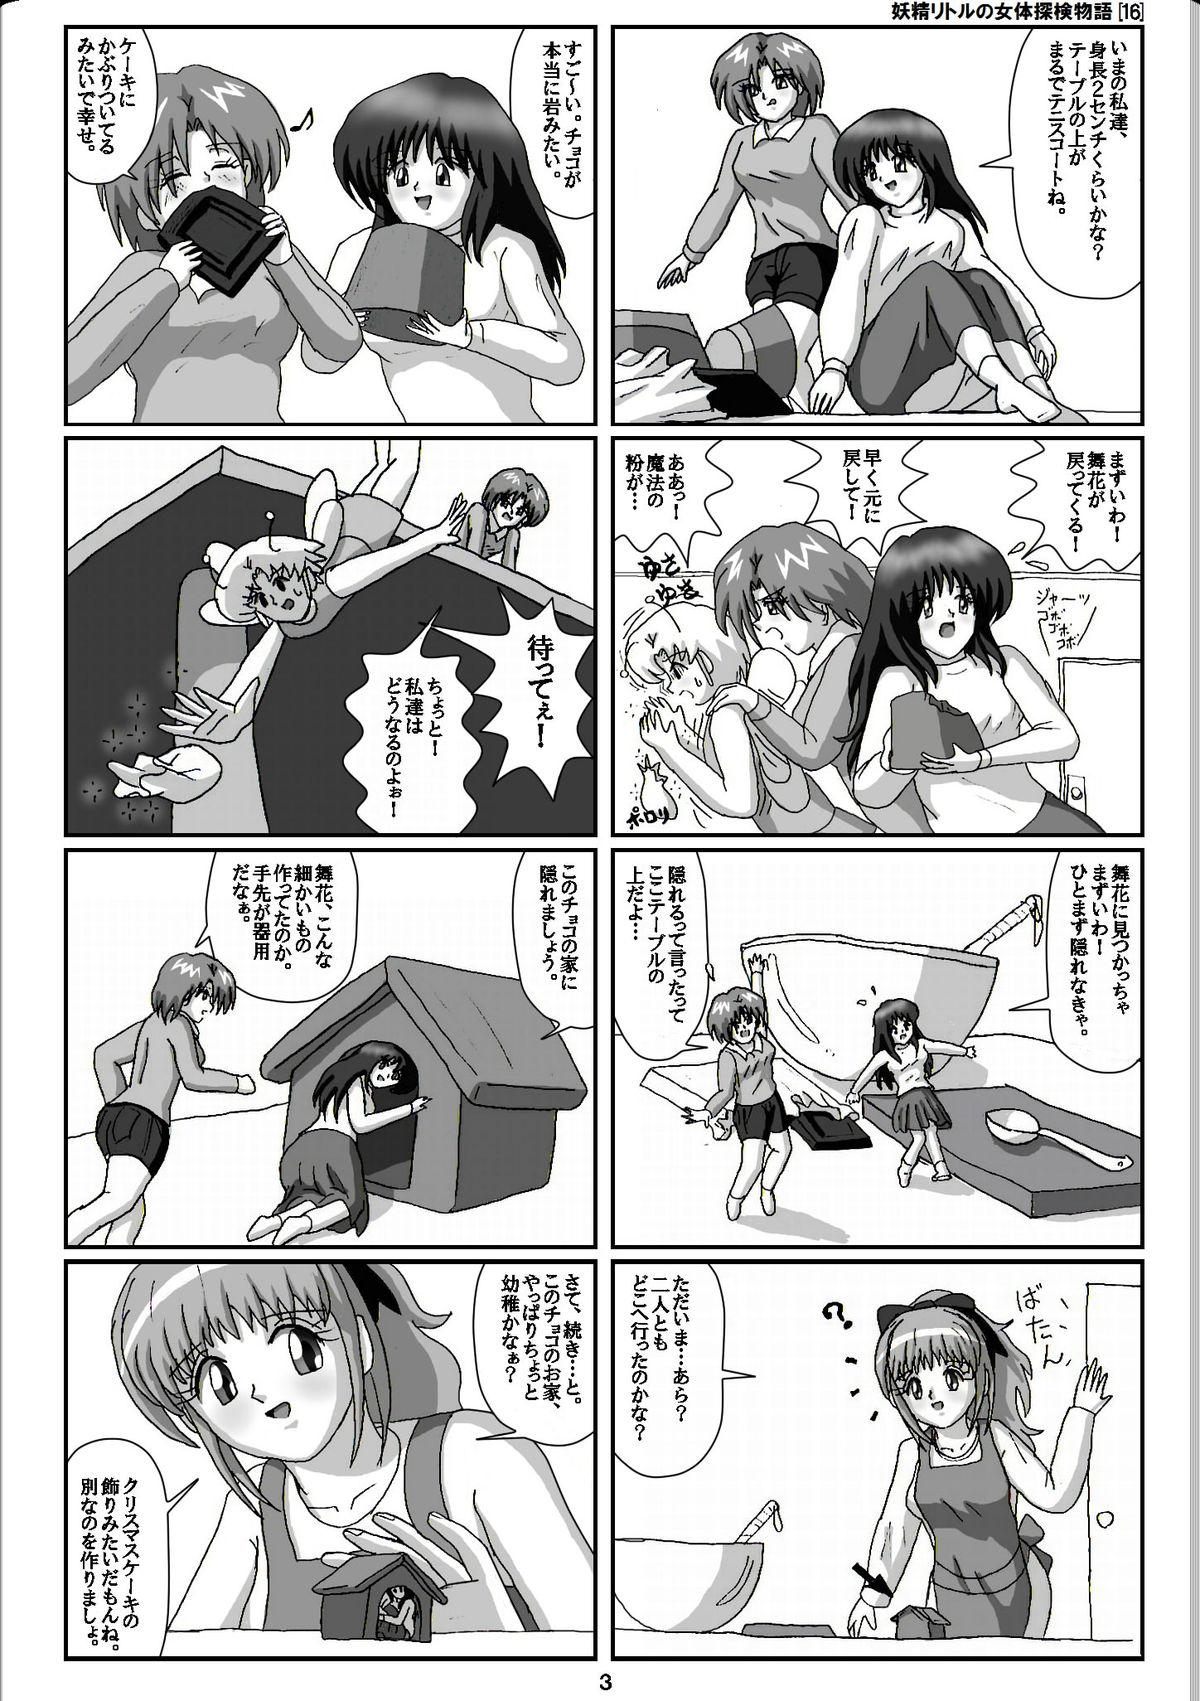 Vagina Yousei Little no Nyotai Tanken Monogatari Gets - Page 3